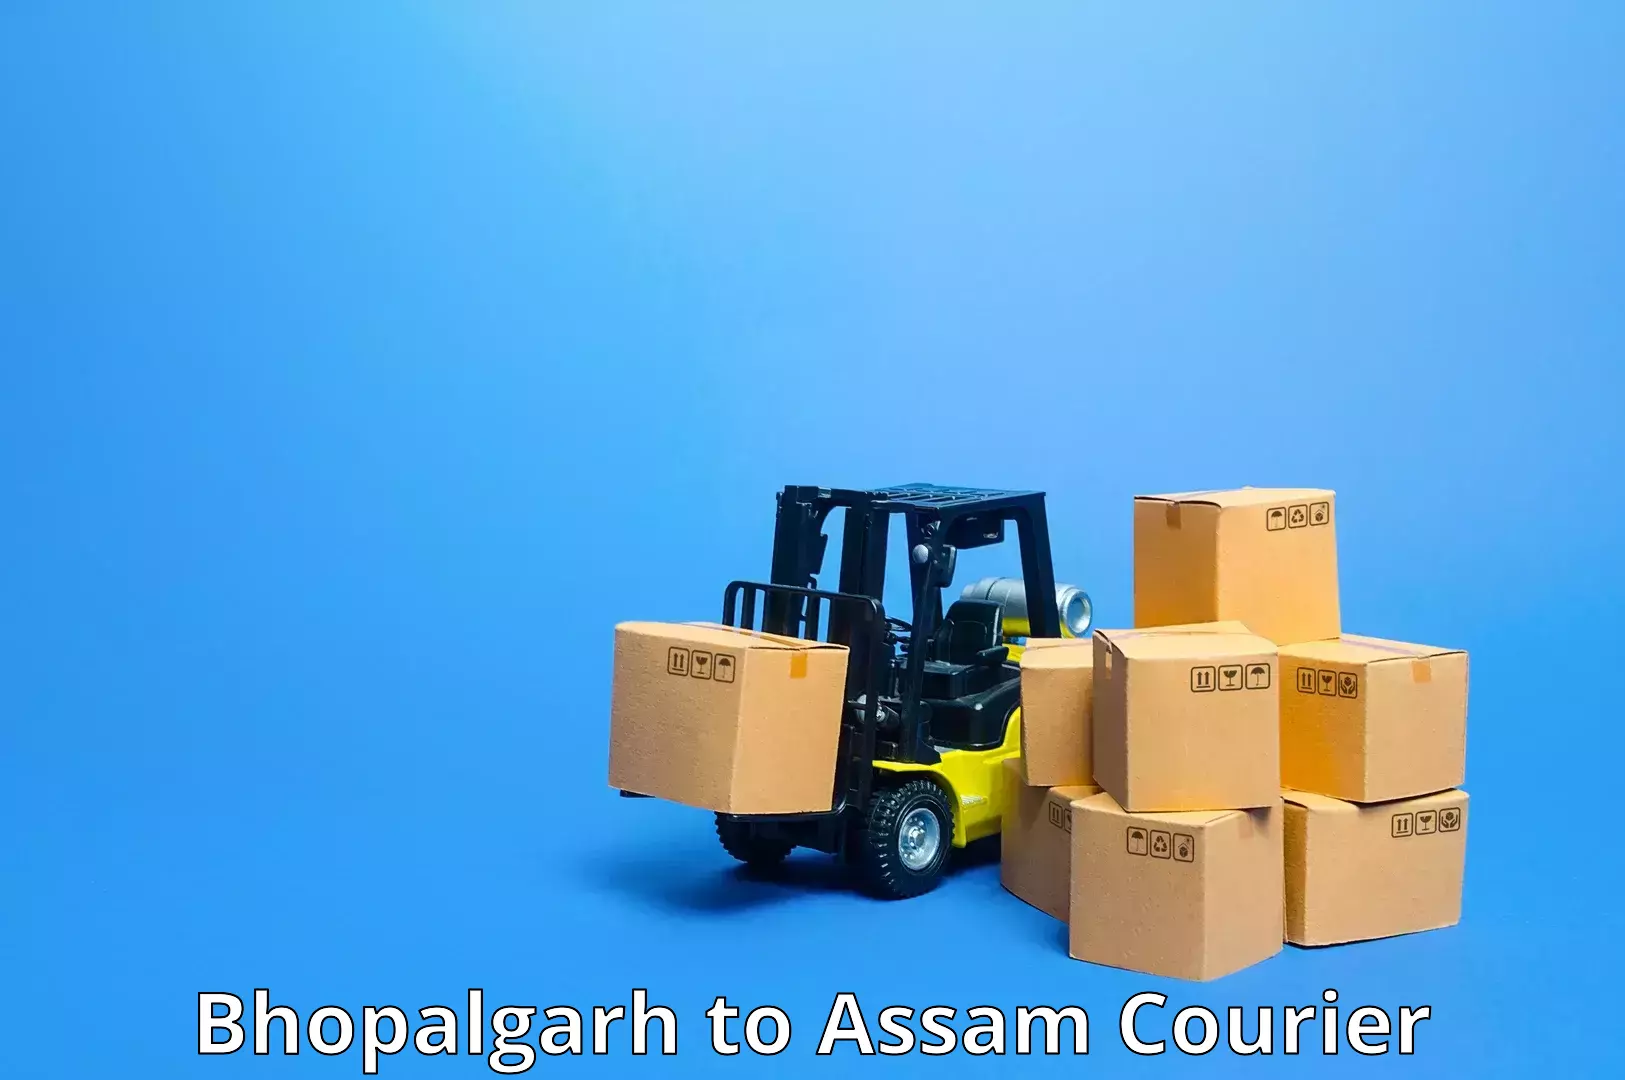 Remote area delivery Bhopalgarh to Sivasagar